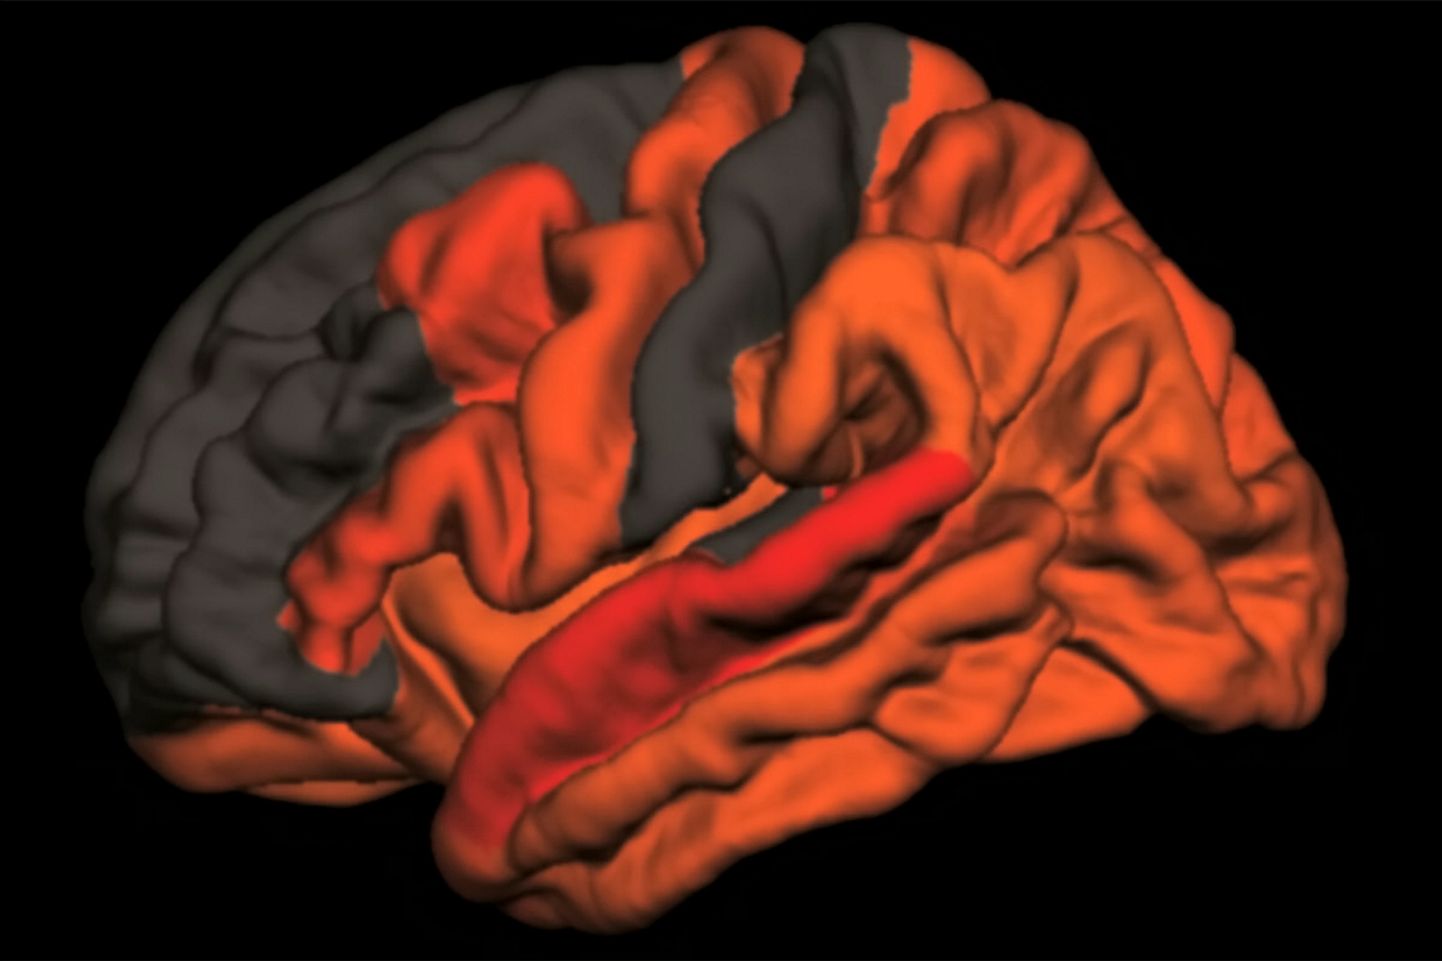 Varasemates uuringutes on leitud, et päeval sageli tukastamine võib viidata Alzheimeri tõvele. Unisus tulebki aeglaste ajulainete vähenemisest ja sügava une lühenemisest. Punase ja oranžiga on joonisel märgitud ajupiirkonnad, kus aeglaste ajulainete vähenemise ja amüloidbeeta kogunemise seos oli kõige märgatavam.